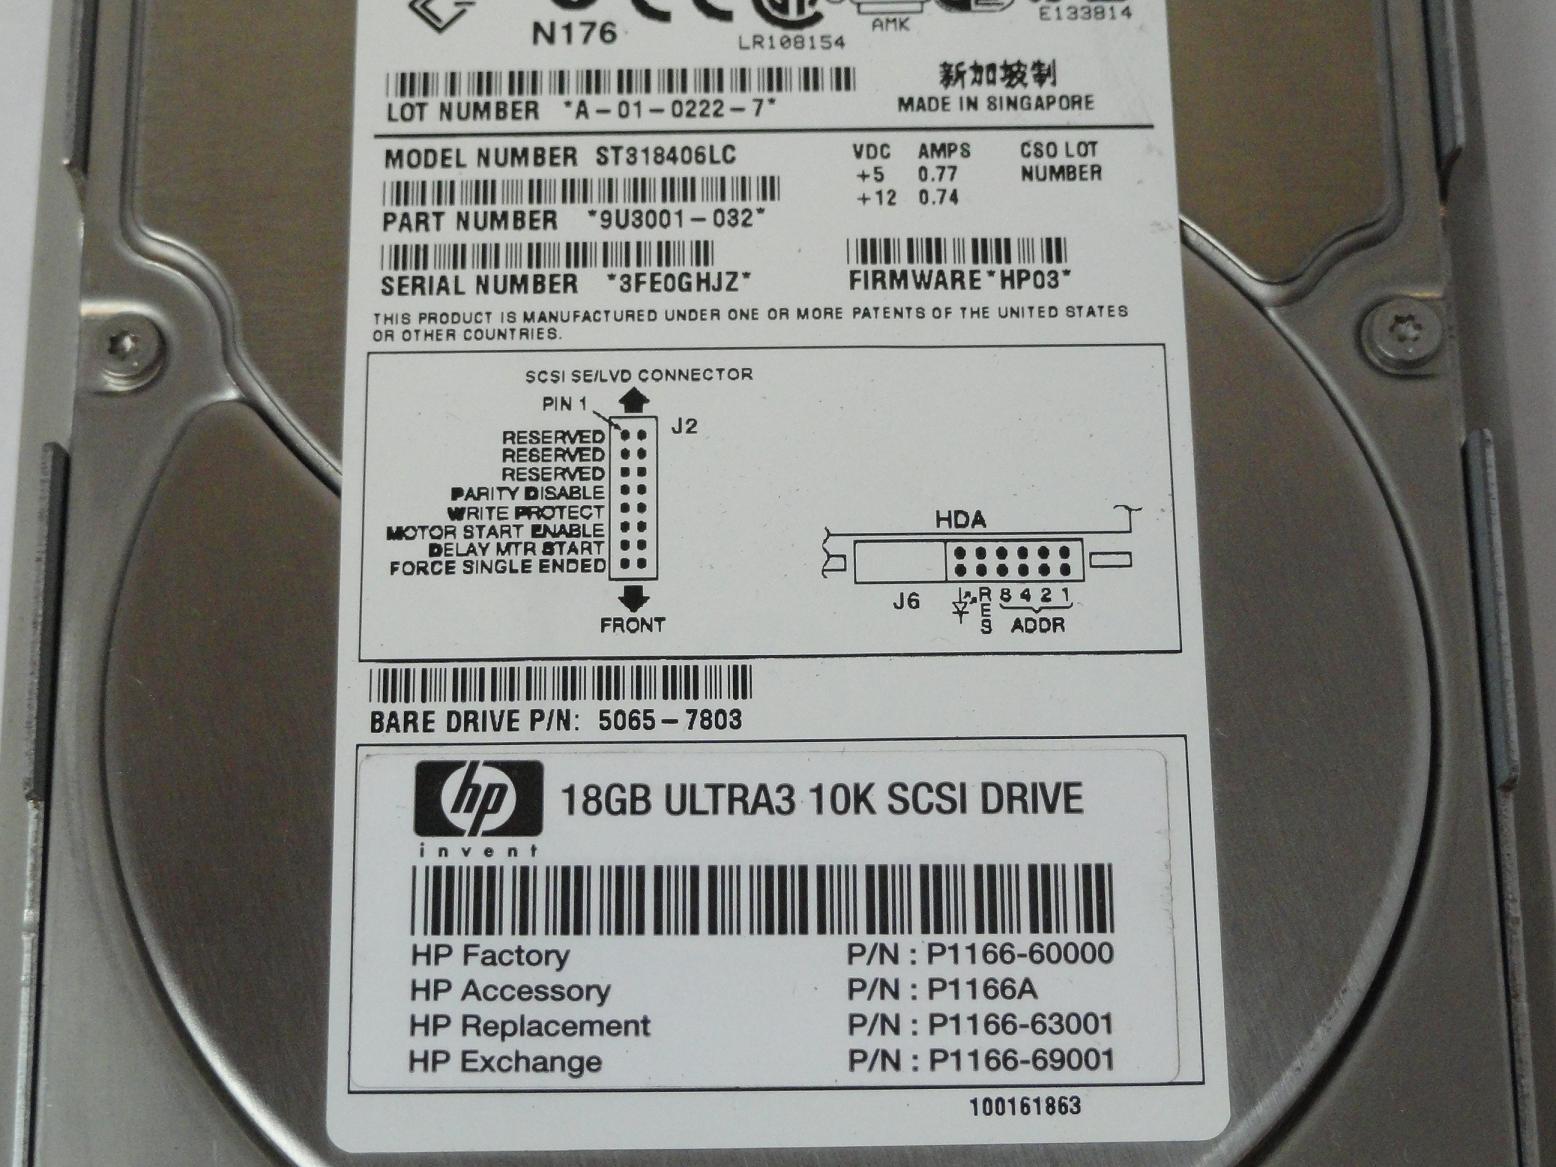 PR25178_9U3001-032_Seagate HP 18GB SCSI 80 Pin 10Krpm 3.5in HDD - Image4